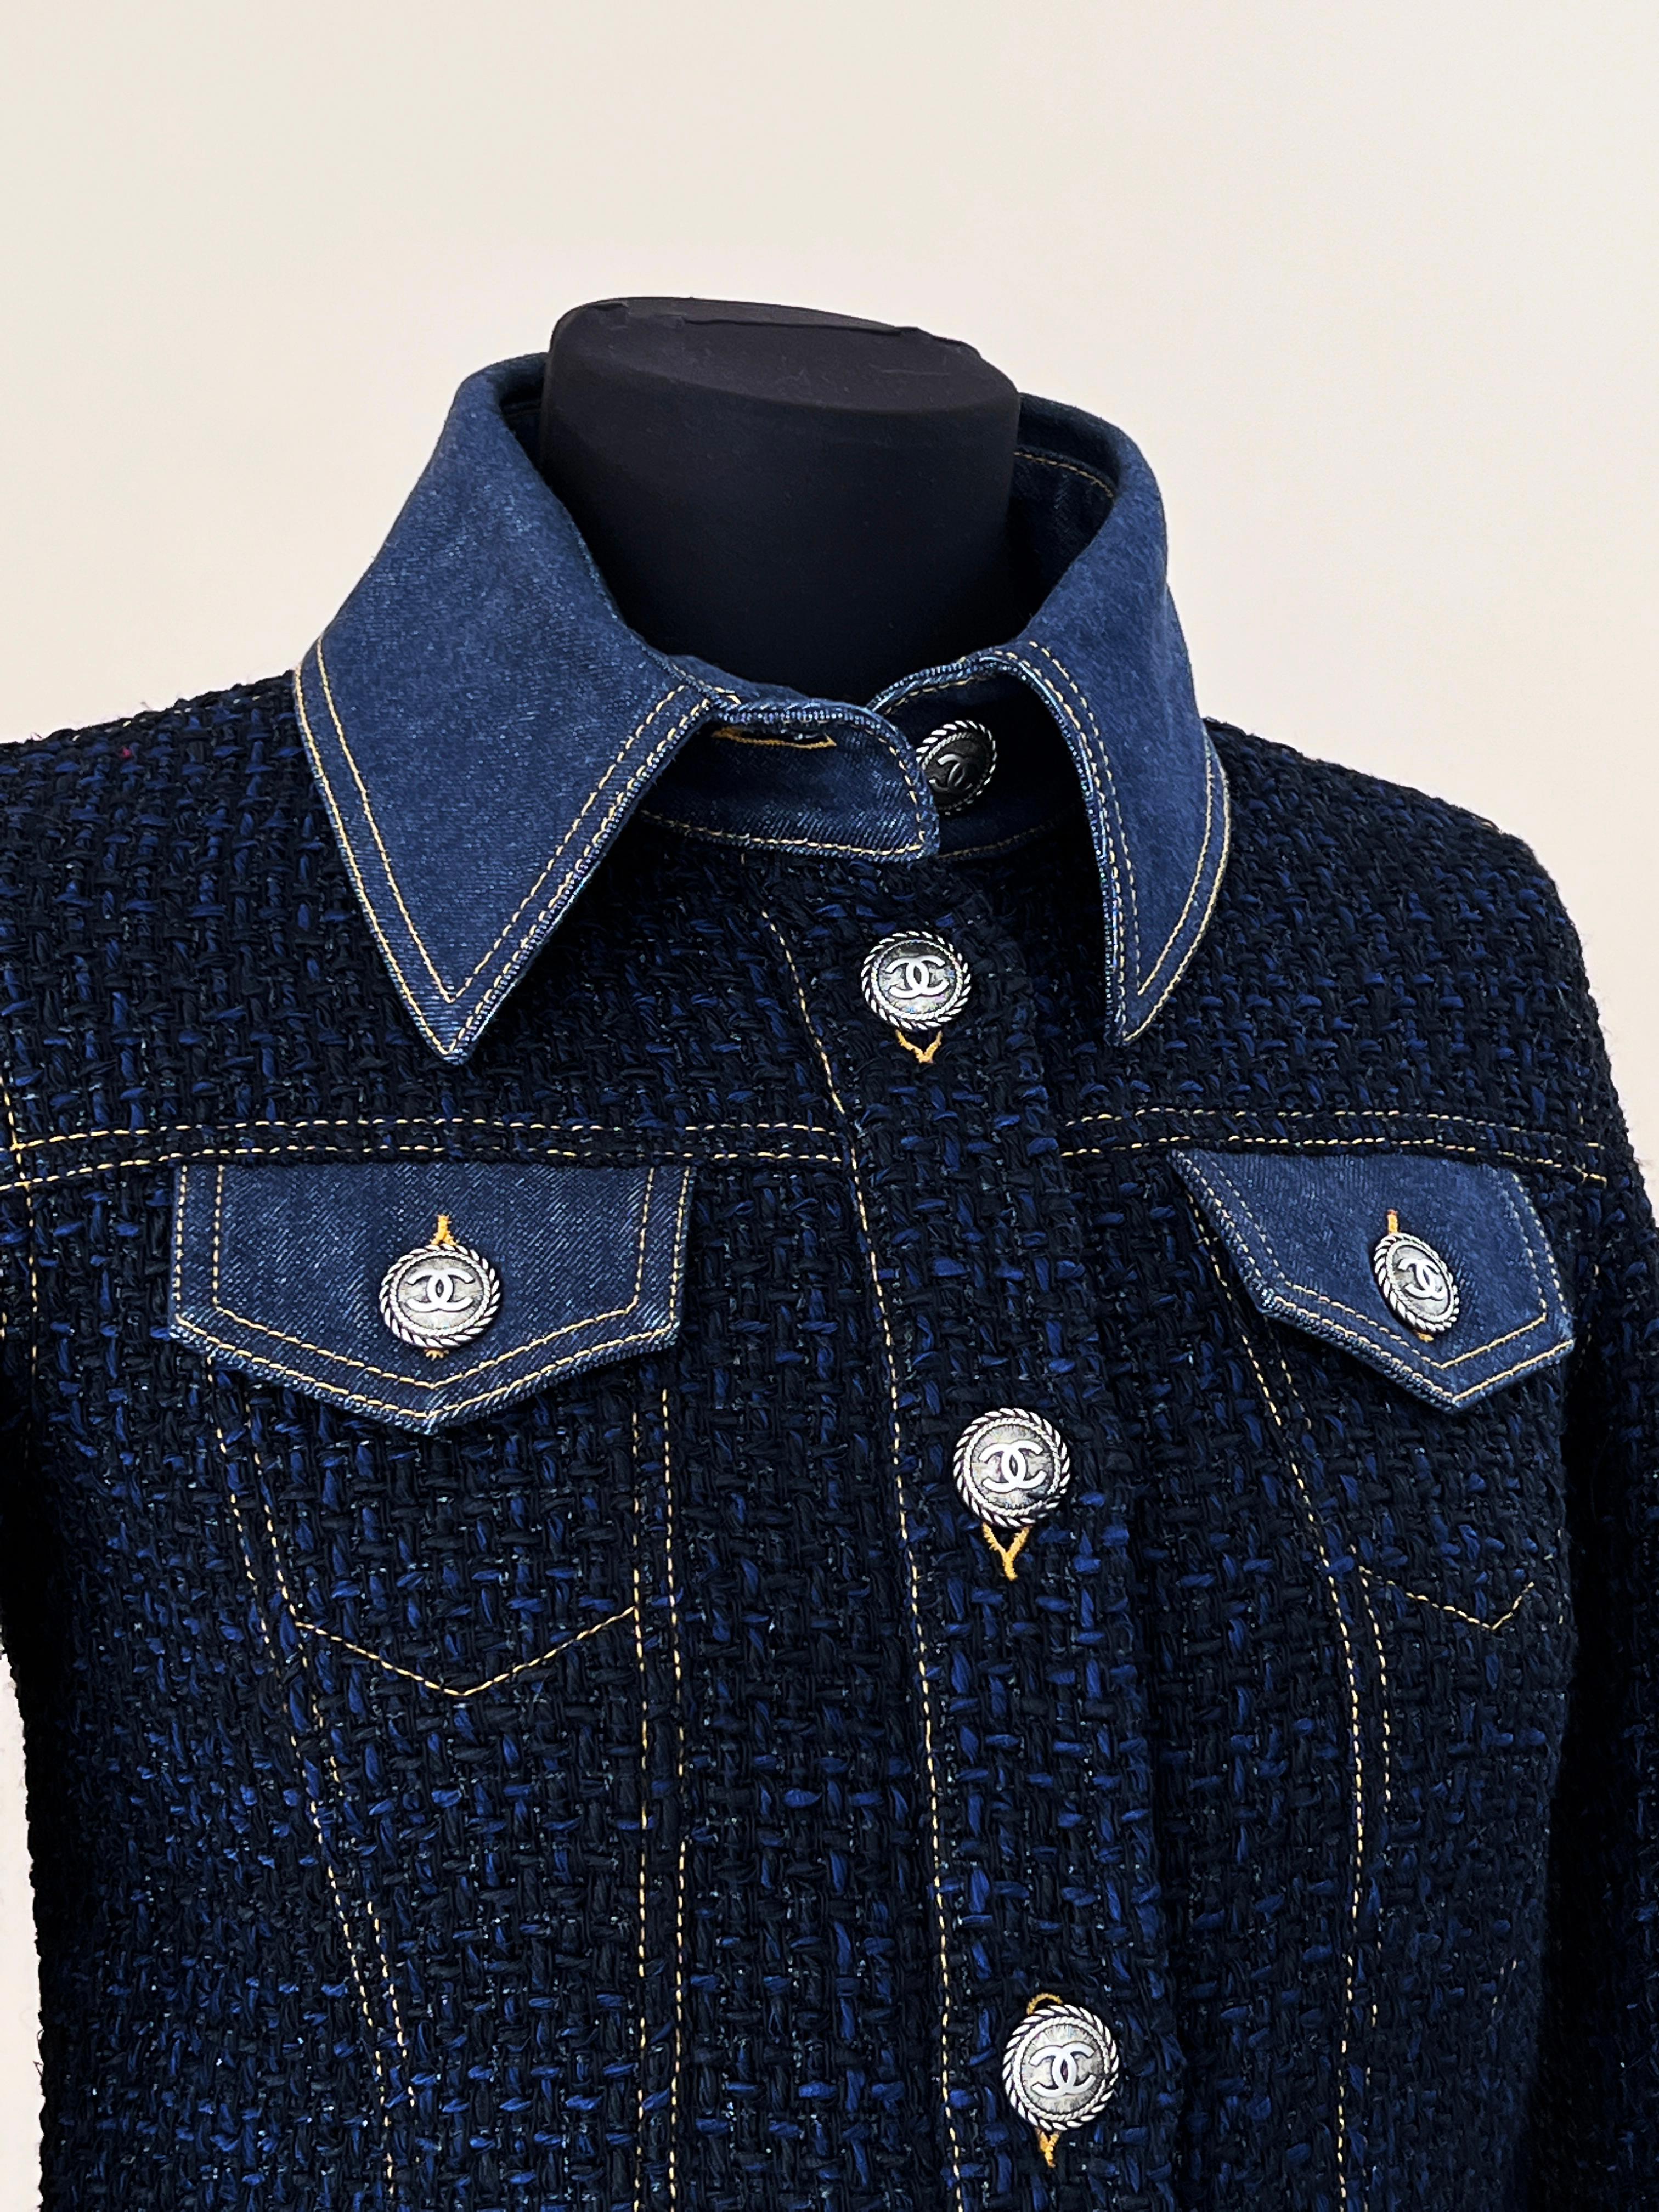 Chanel Must Have Ad Campaigner Lesage Tweed Jacket en vente 6